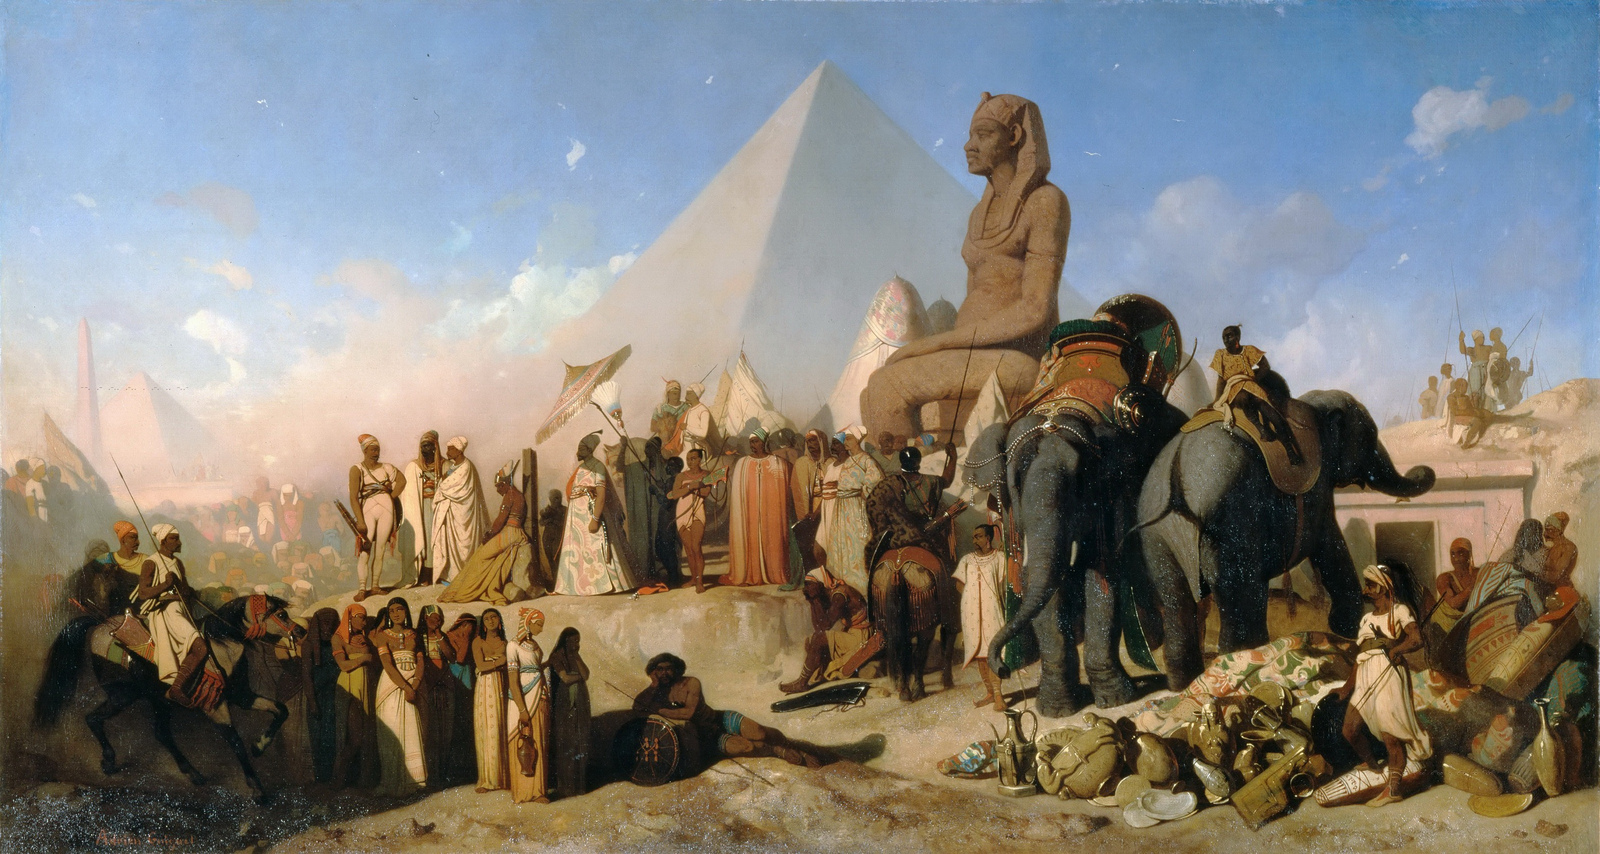 Giật mình nguyên nhân thực sự giúp đế chế Ba Tư đánh bại Ai Cập - ảnh 4